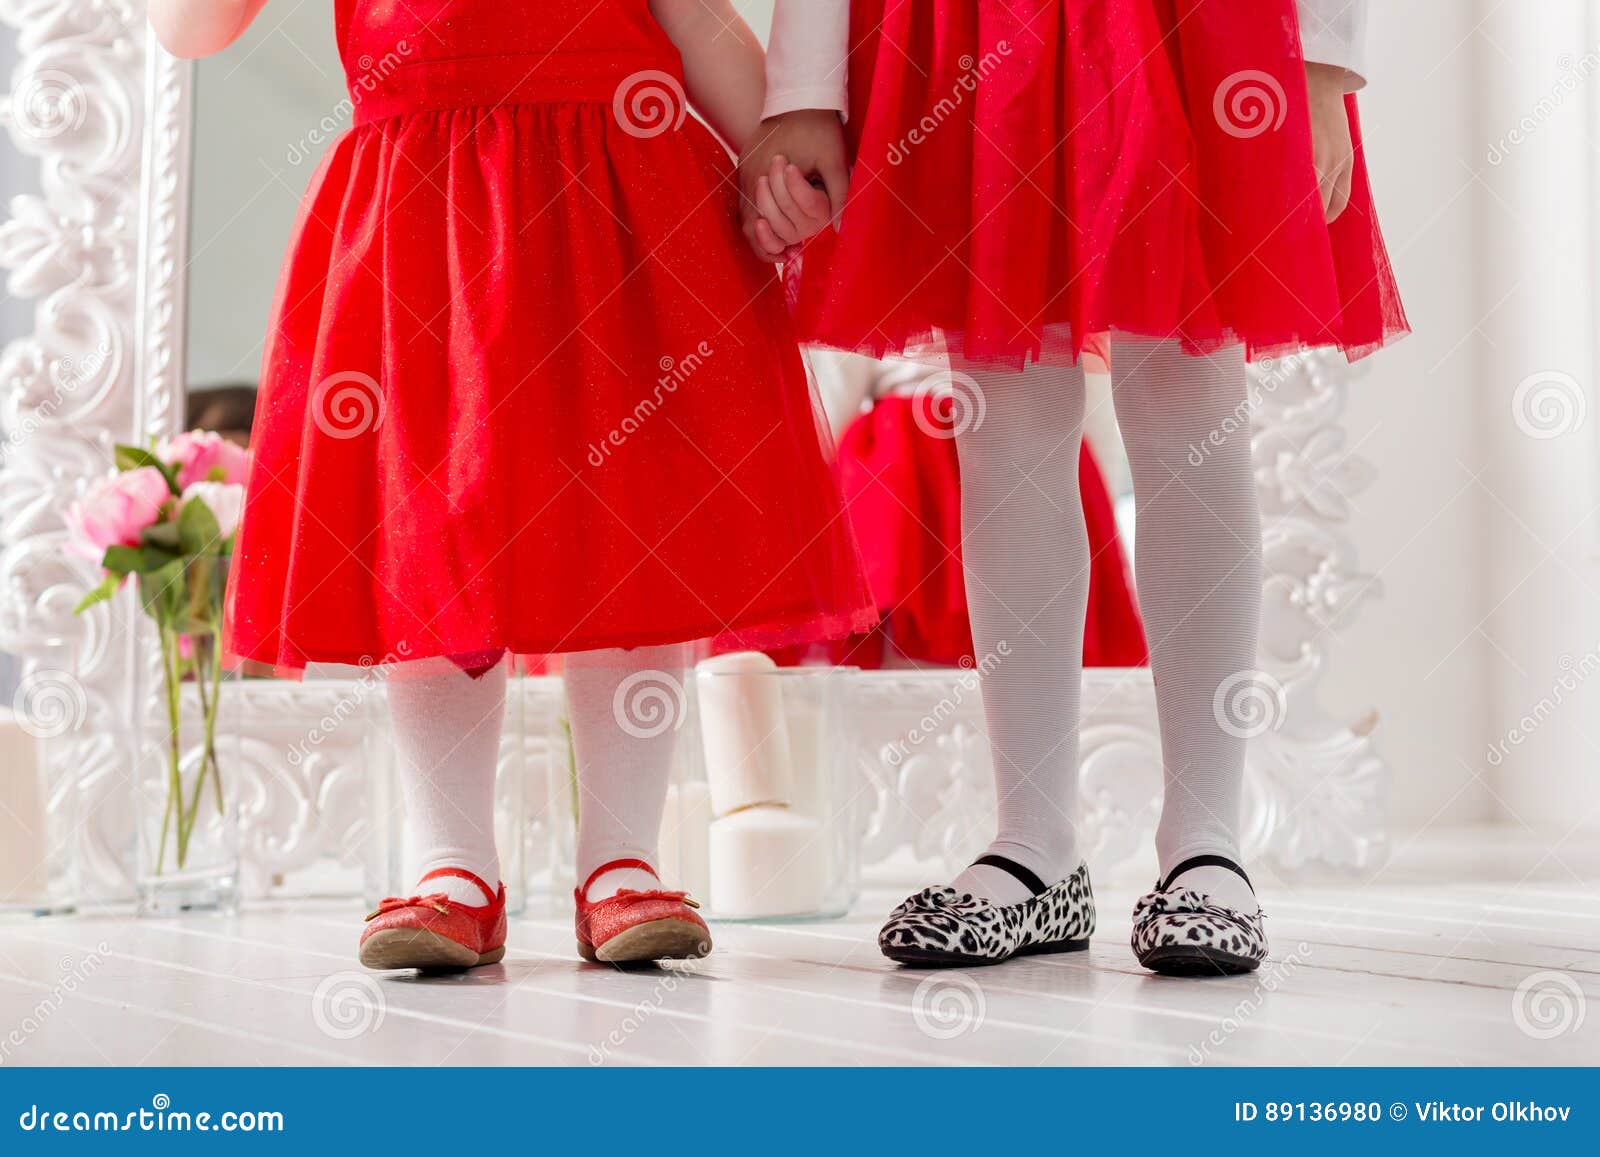 Piernas En Dos Niñas En Vestidos Rojos Foto de archivo - Imagen de belleza, hija: 89136980